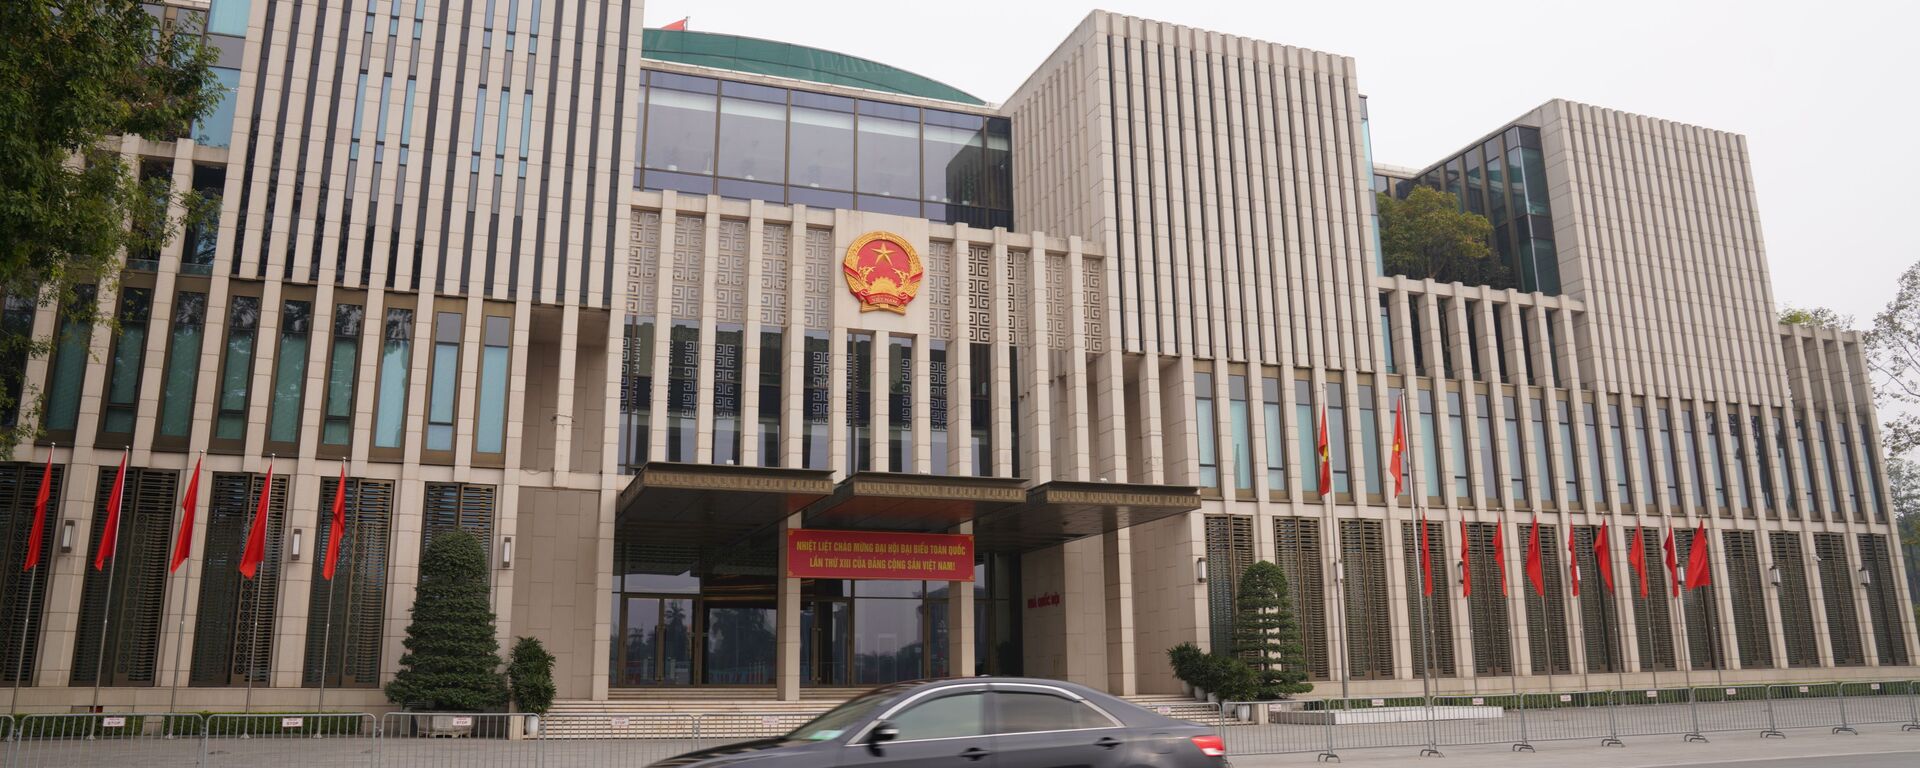 Tòa nhà Quốc hội Việt Nam được trang hoàng chào mừng Đại hội lần thứ 13 của Đảng Cộng sản Việt Nam  - Sputnik Việt Nam, 1920, 14.03.2021